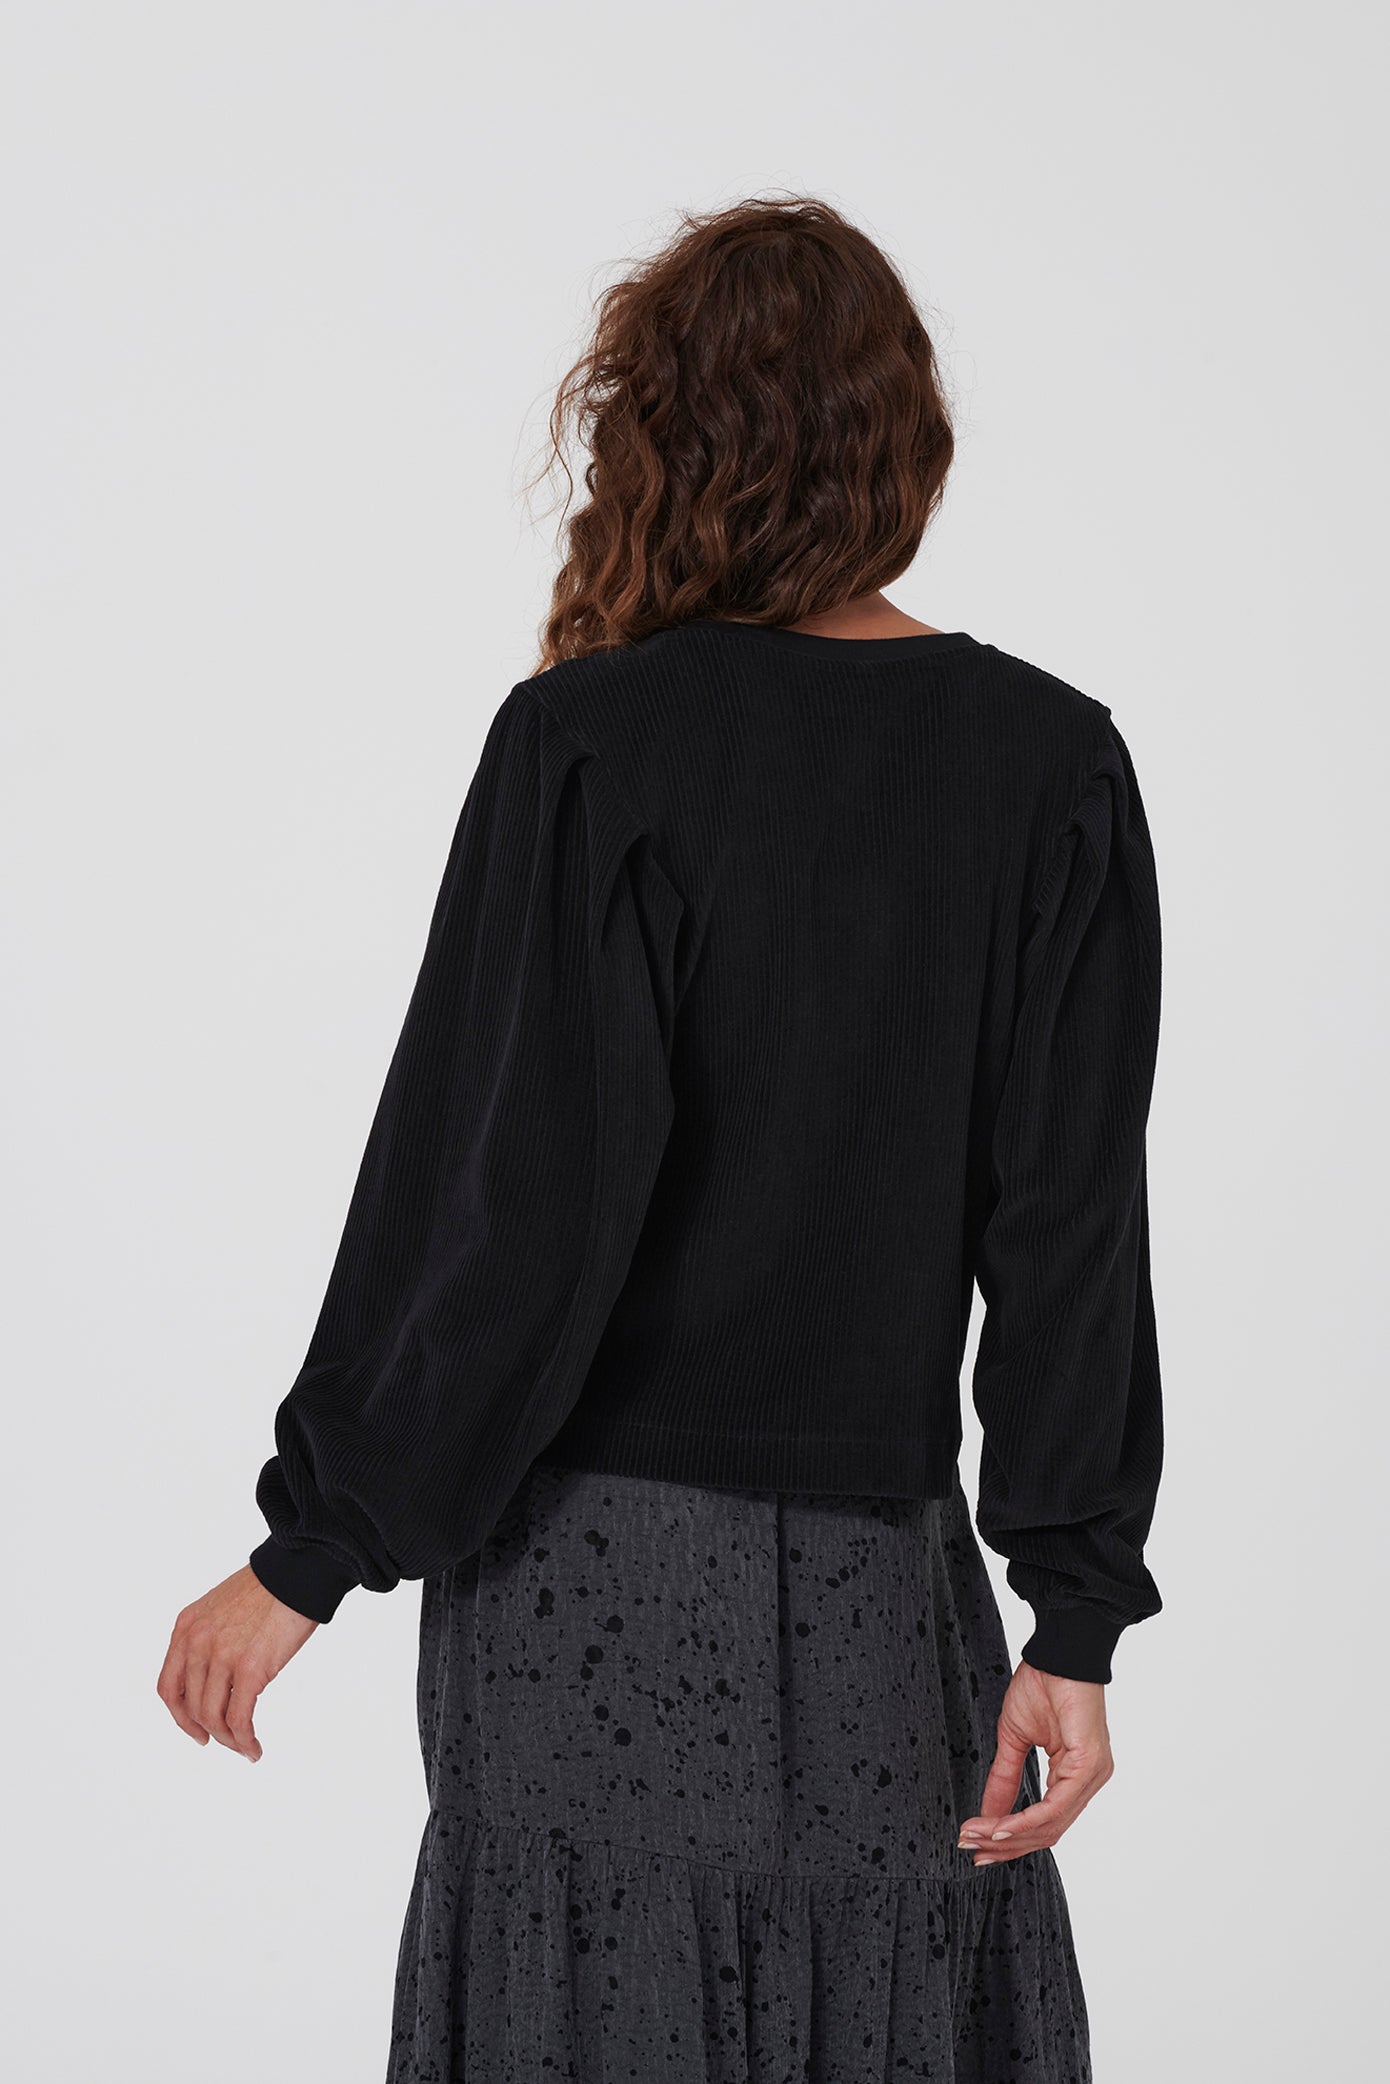 Sweatshirt MALVINE in schwarz von LOVJOI aus Bio-Baumwolle